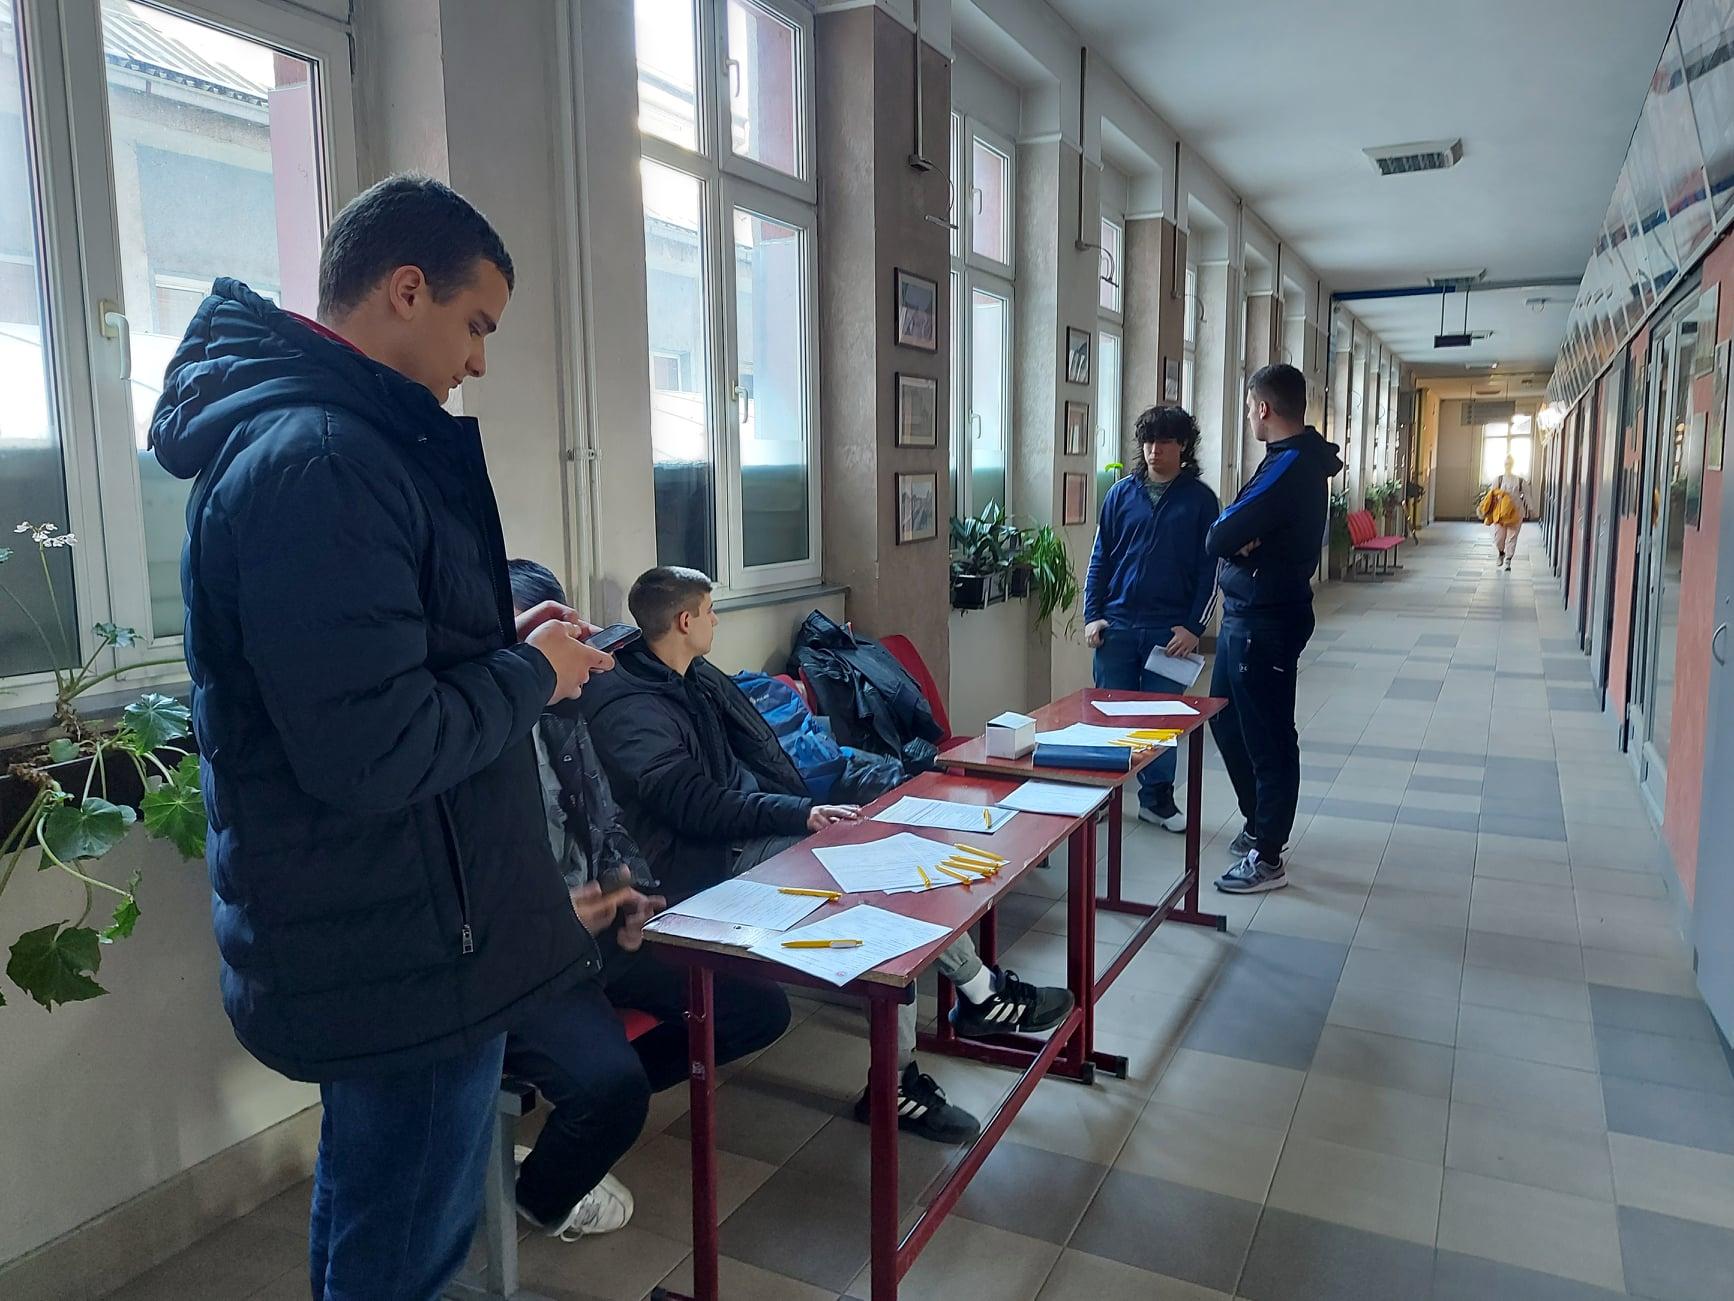 21.03.2022. – Dobrovoljno davanje krvi za učenike u Tehničkoj školi „Valjevo“, realizovali su akciju dobrovoljnog davanja krvi.